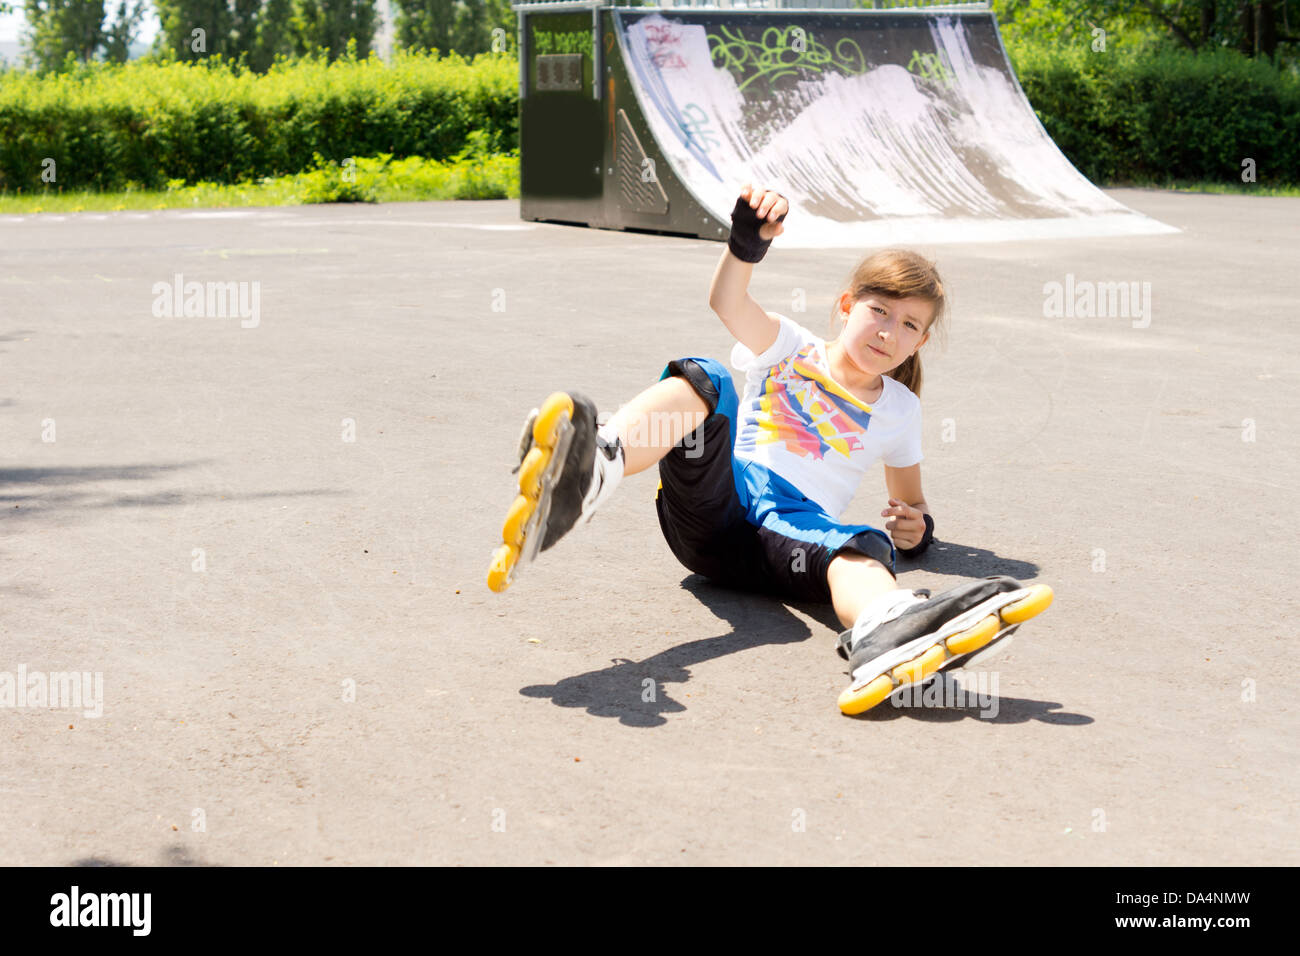 Jeune fille prend une chute tout en pratiquant le roller stunts Photo Stock  - Alamy